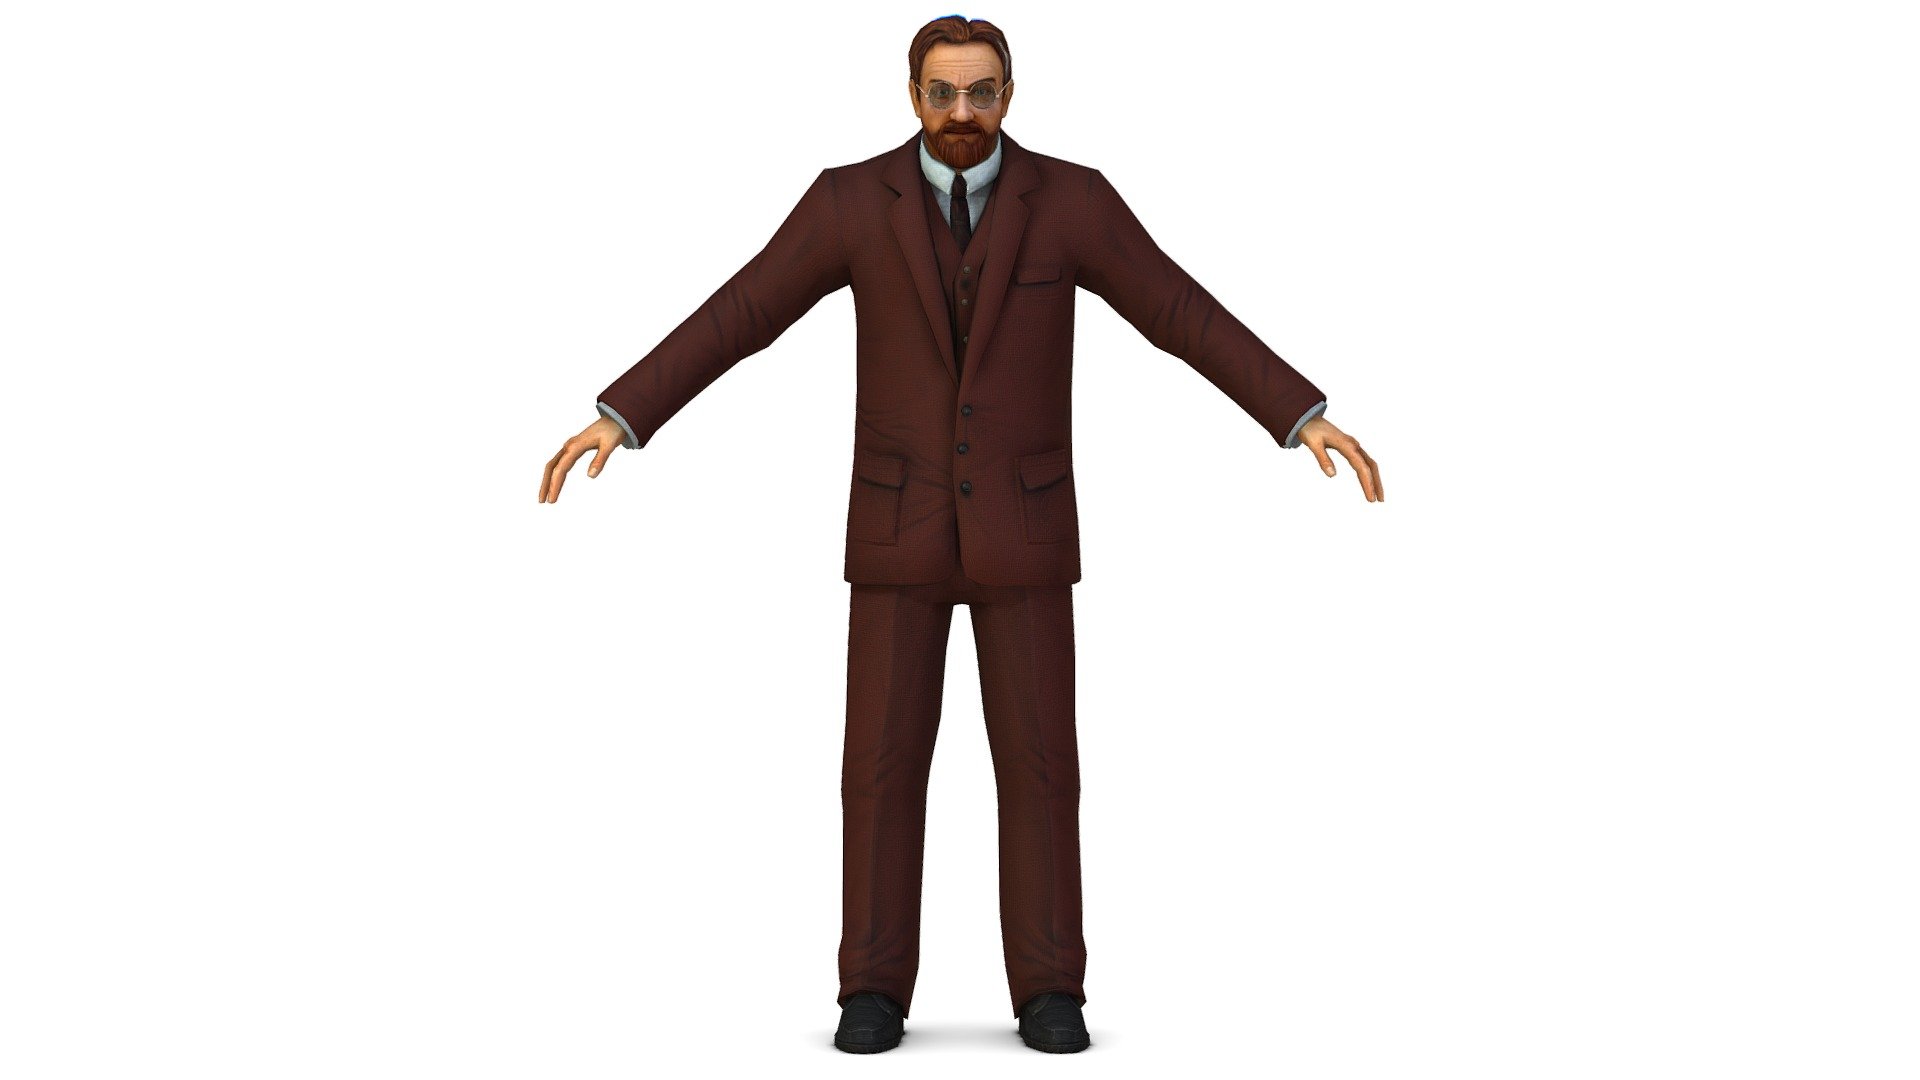 2x color 1024 Textures and Bump Textures - Retro Older Man Doctor in Brown Suit - Buy Royalty Free 3D model by Oleg Shuldiakov (@olegshuldiakov) 3d model